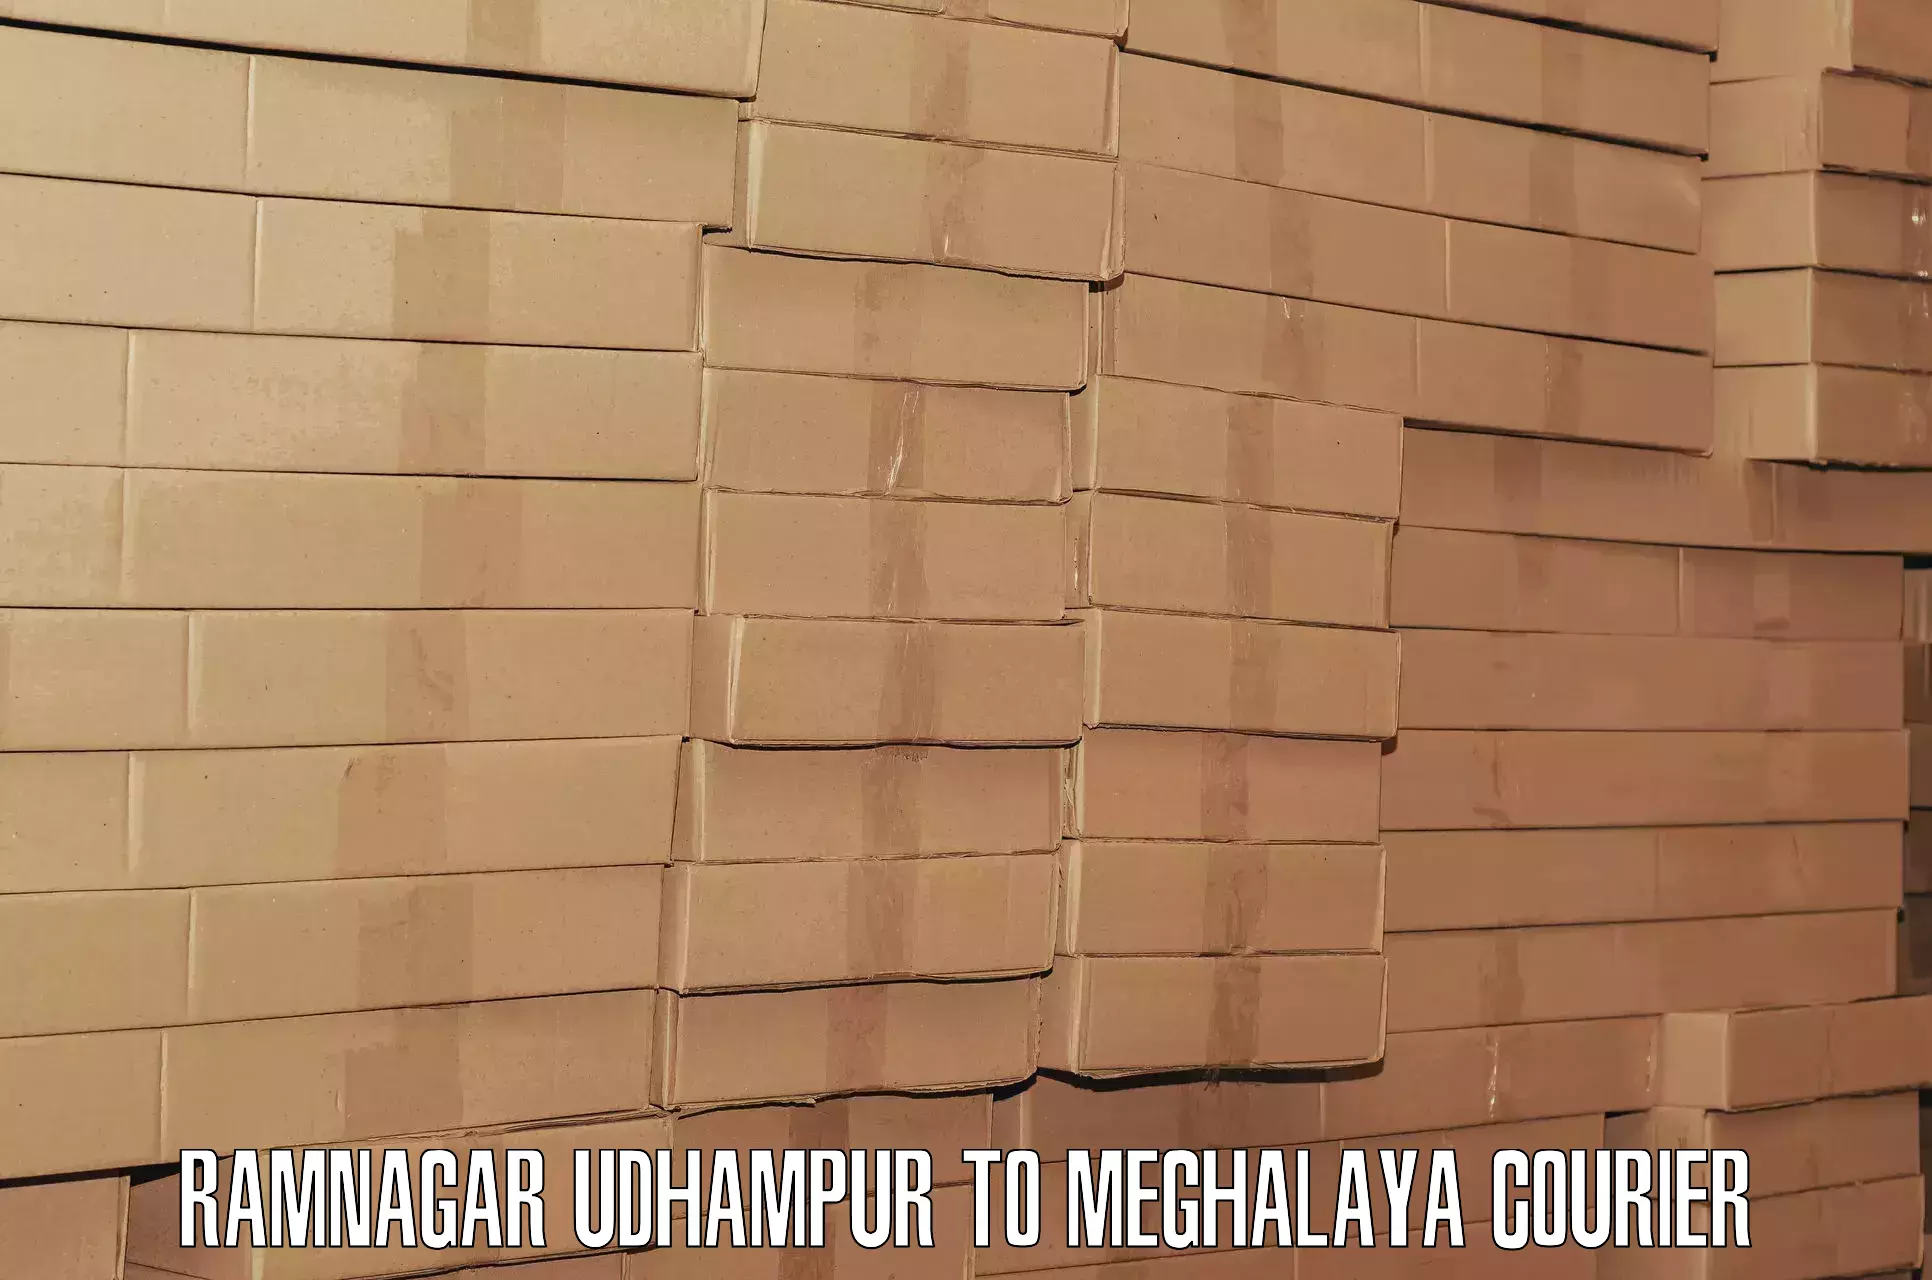 Baggage transport scheduler Ramnagar Udhampur to Meghalaya